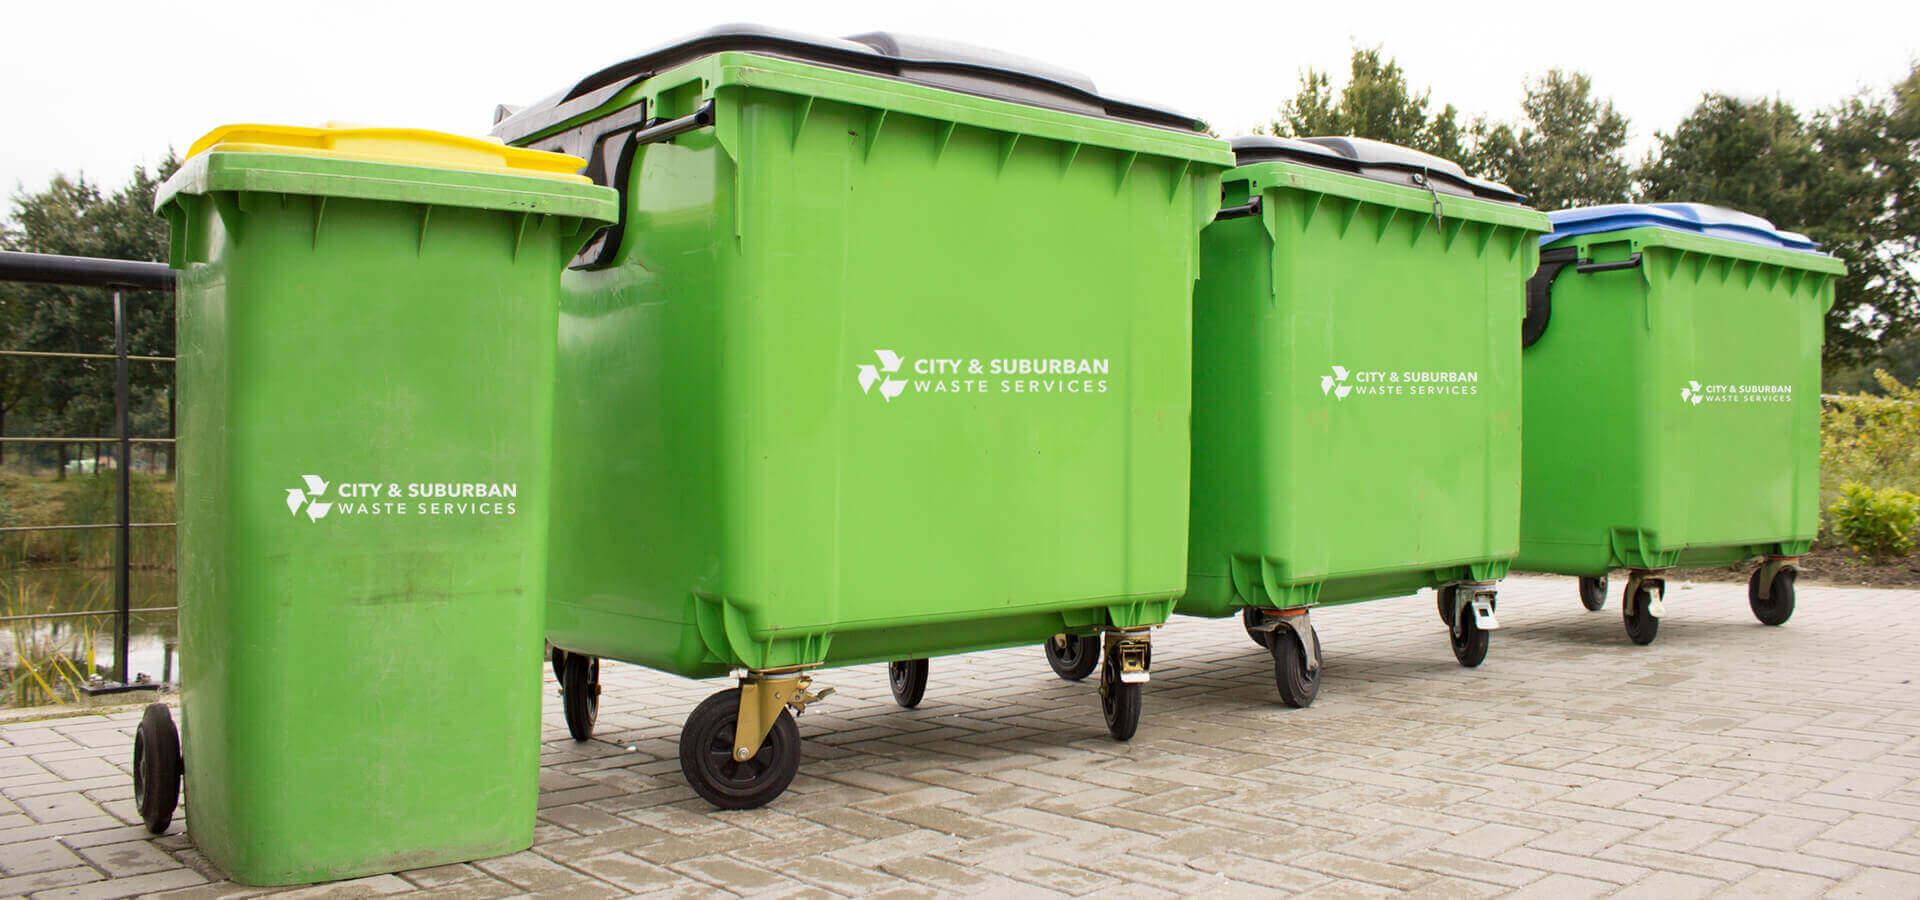 City & Suburban Waste Services Waste Bins clapham